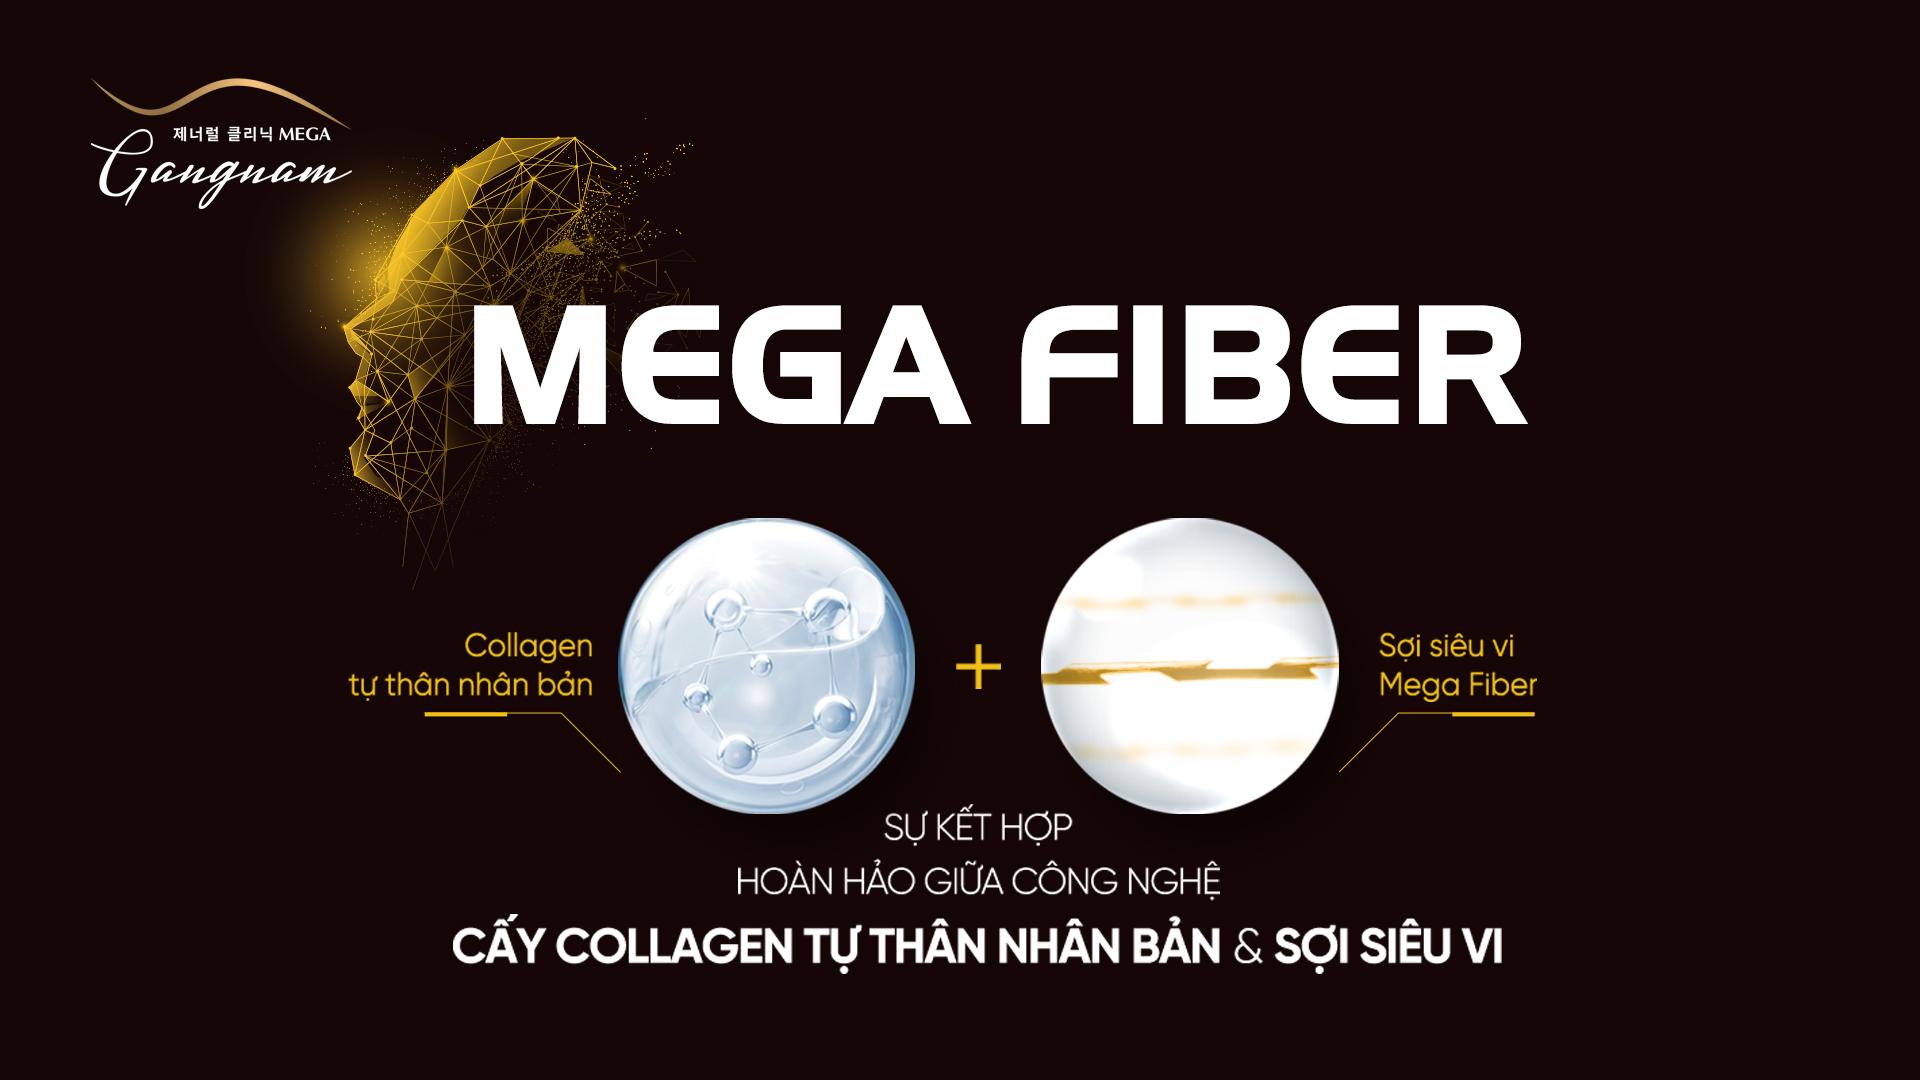 Mega Fiber kết hợp đa trị liệu tăng hiệu quả trẻ hóa xóa nhăn